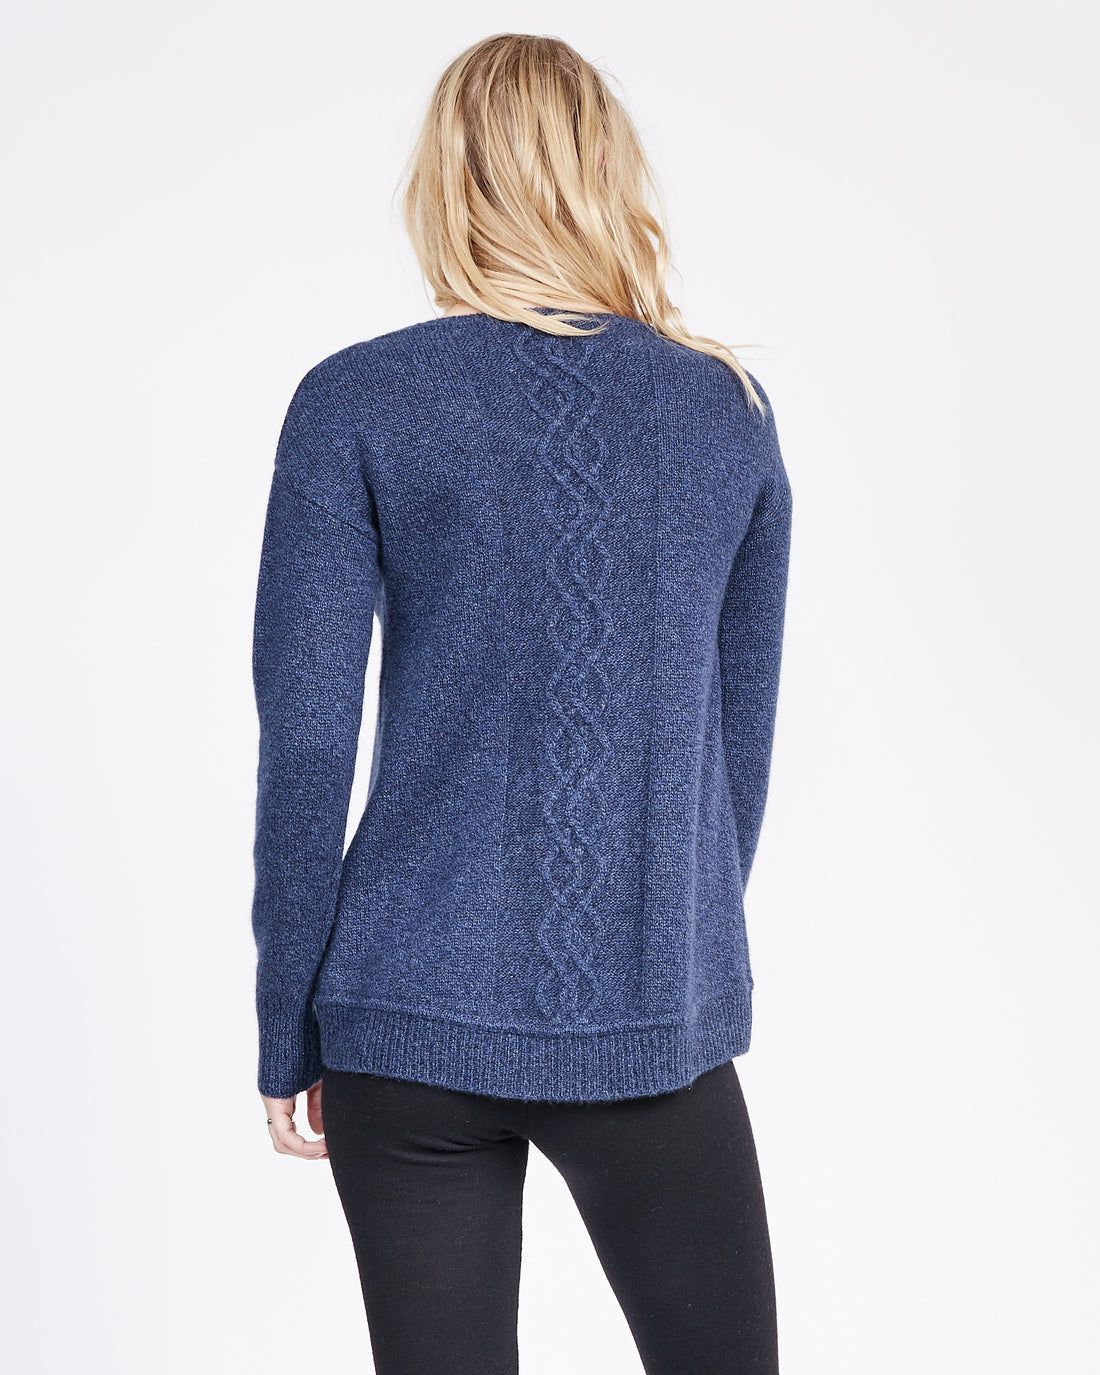 Edana Cashmere Cable Sweater